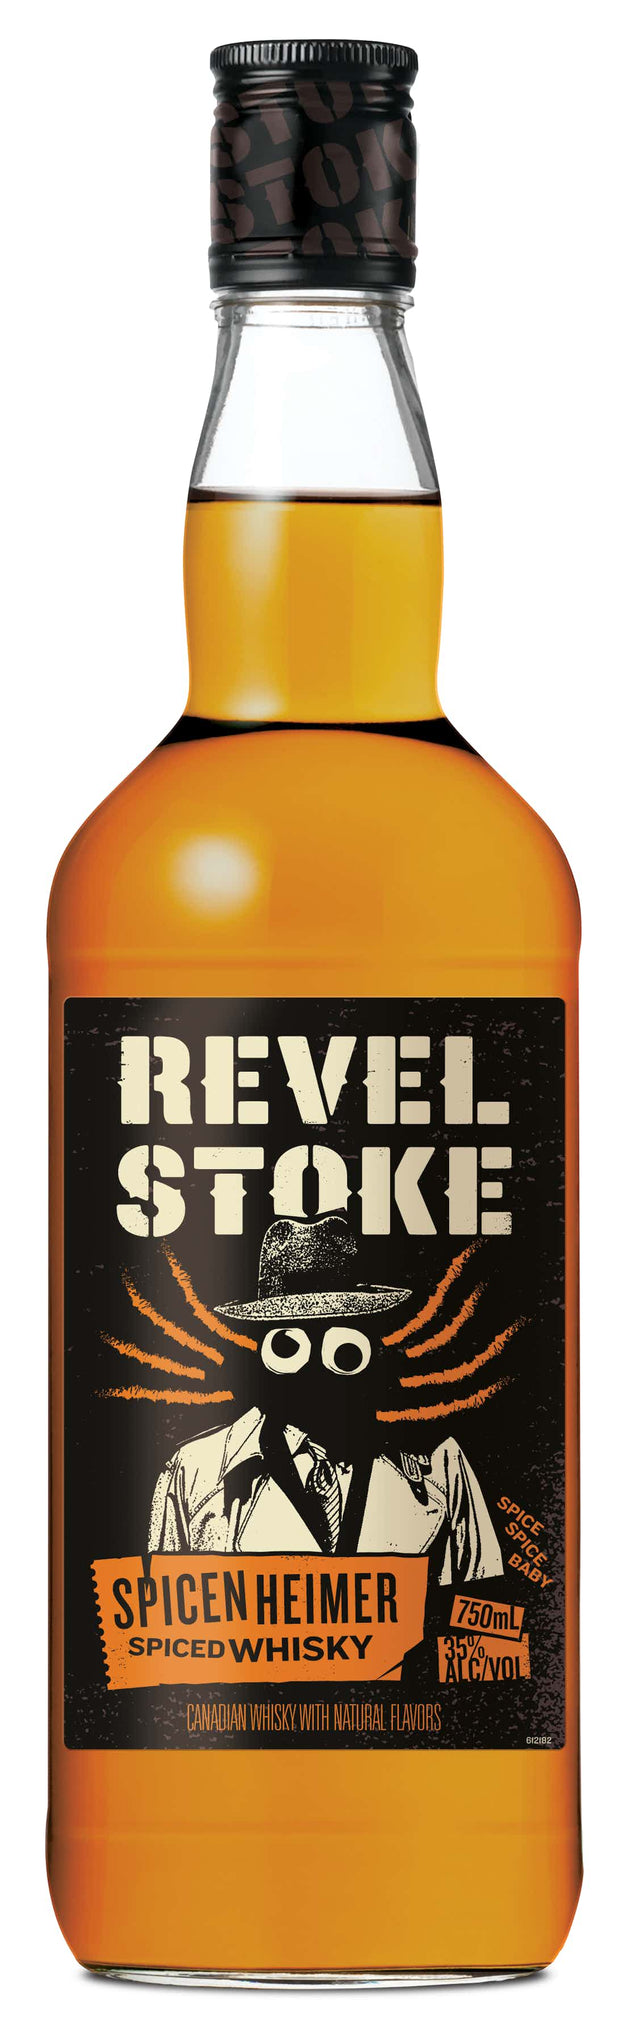 Revel Stoke Spicenheimer spiced whiskey 750ml